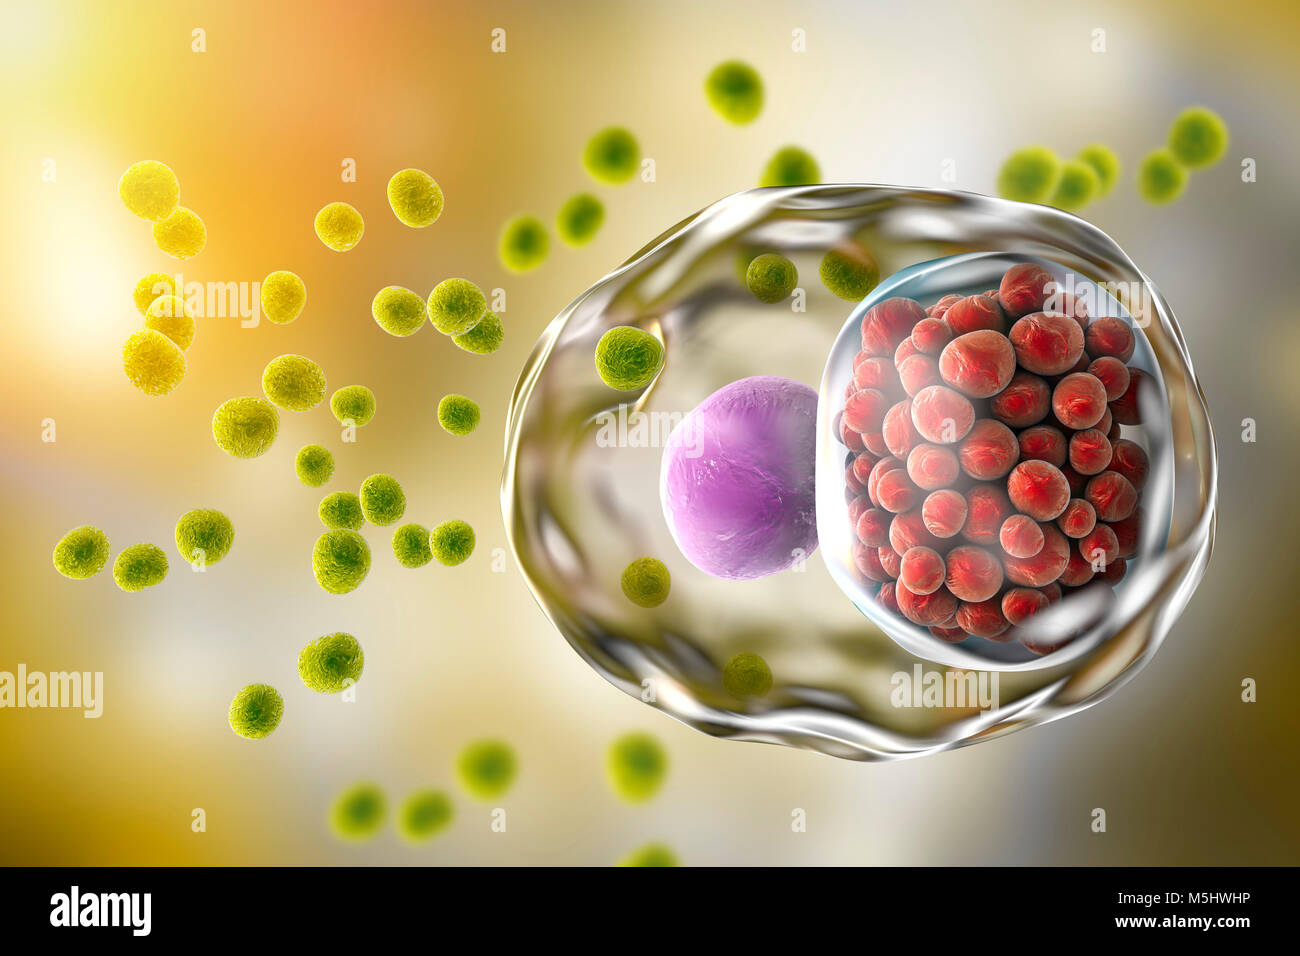 Chlamydia trachomatis bactéries. Illustration d'ordinateur montrant deux stades de vie de la Chlamydiose : corps élémentaires (non-extracellulaire multipliant le stade infectieux, les petites sphères vertes) et l'inclusion d'un composé d'un groupe de corps réticulés chlamydia intracellulaires (stade, multipliant les petites sphères rouges) près du noyau (violette) d'une cellule. Banque D'Images